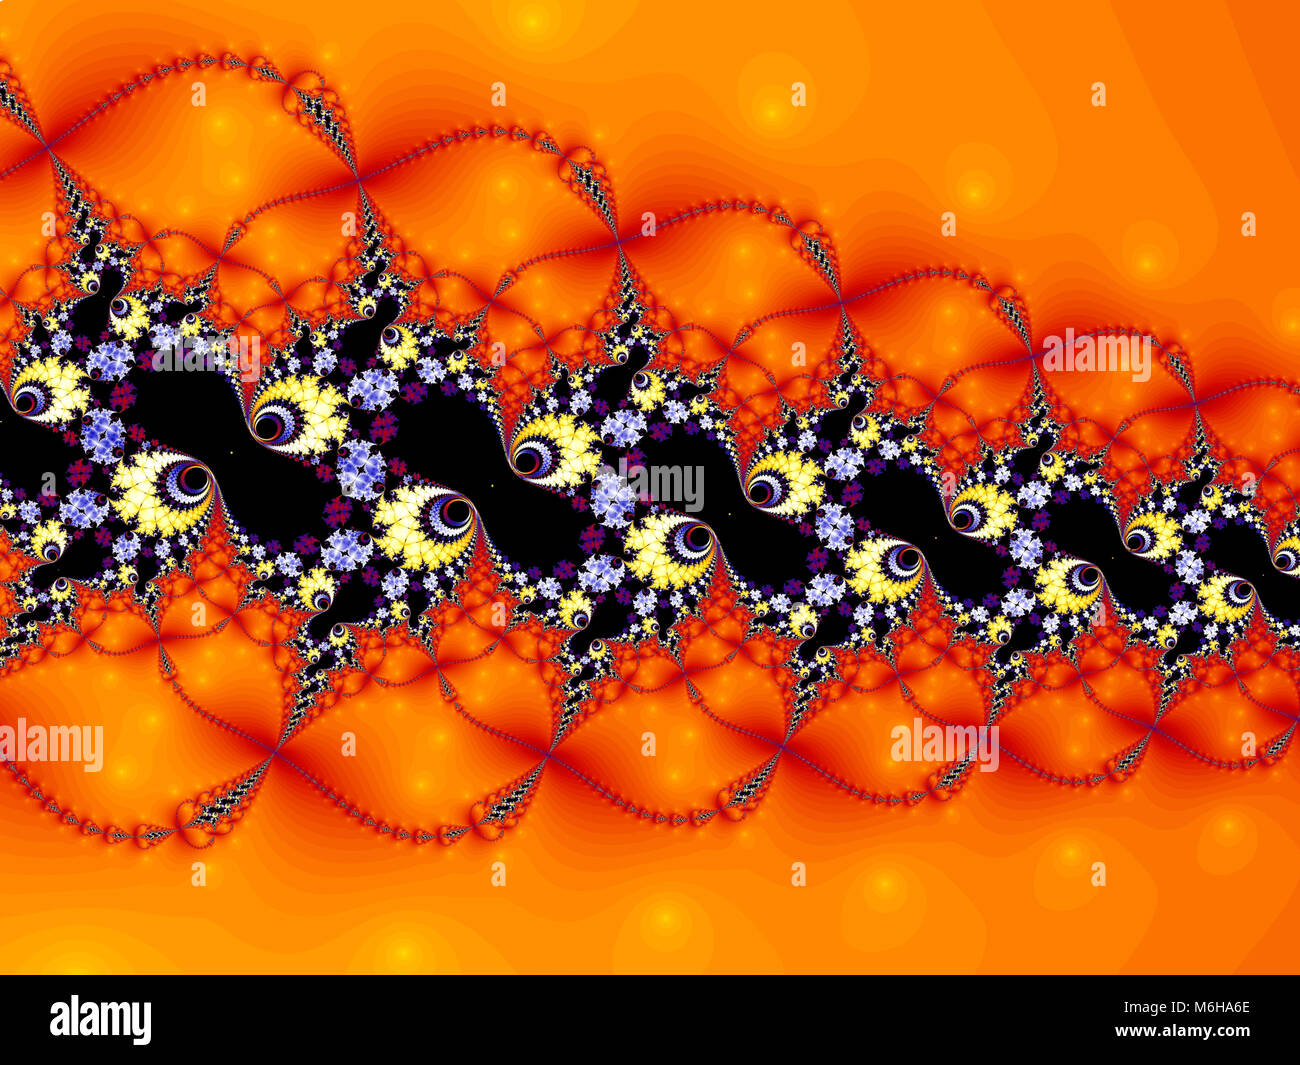 Abstract fractal pattern. Un affascinante ornamento surrealista. Illustrazione Foto Stock